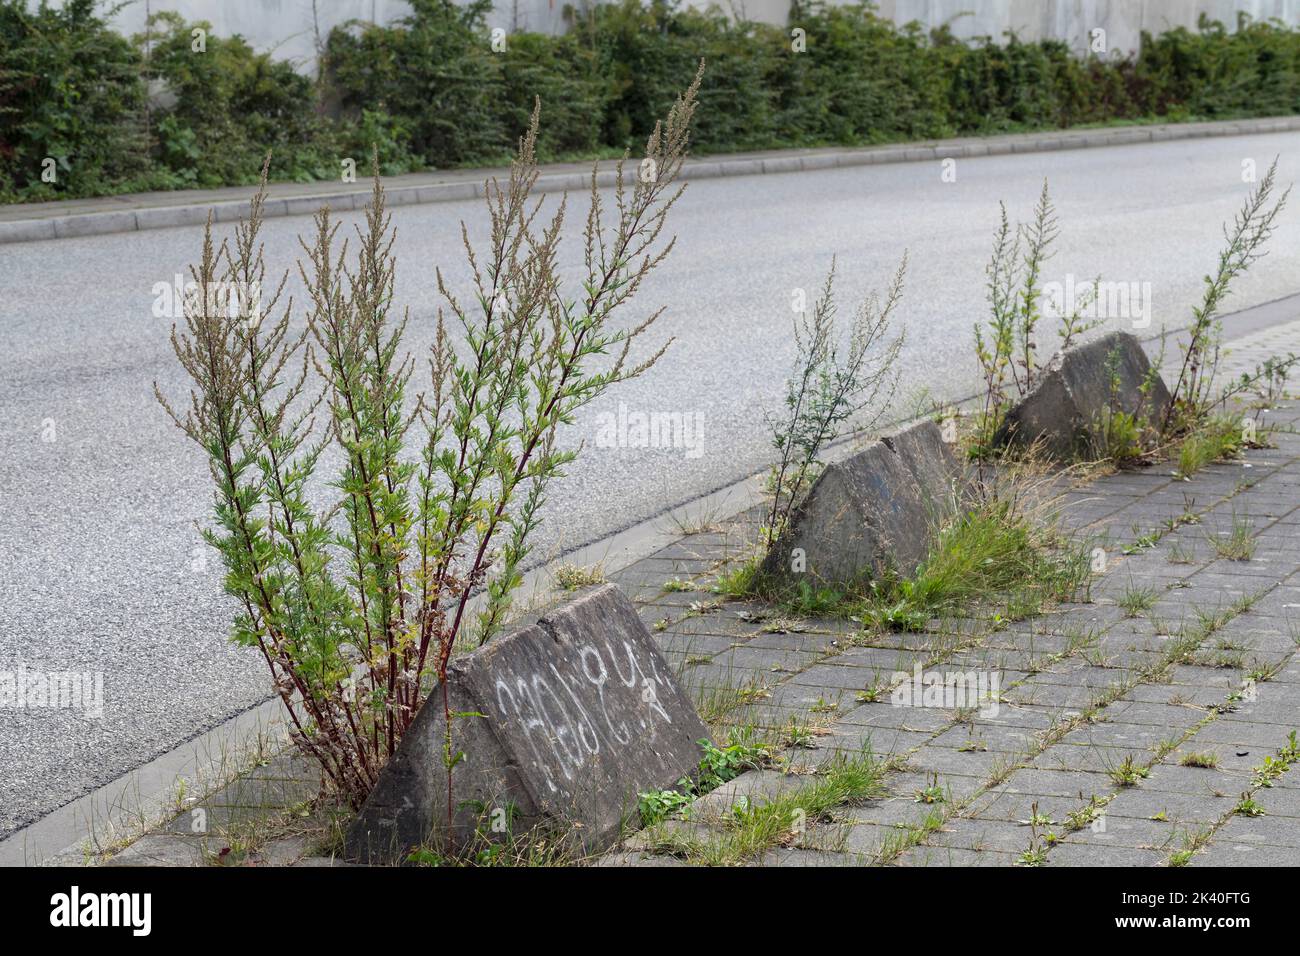 Moût commun, moût commun (Artemisia vulgaris), à la frontière de la rue, Allemagne Banque D'Images